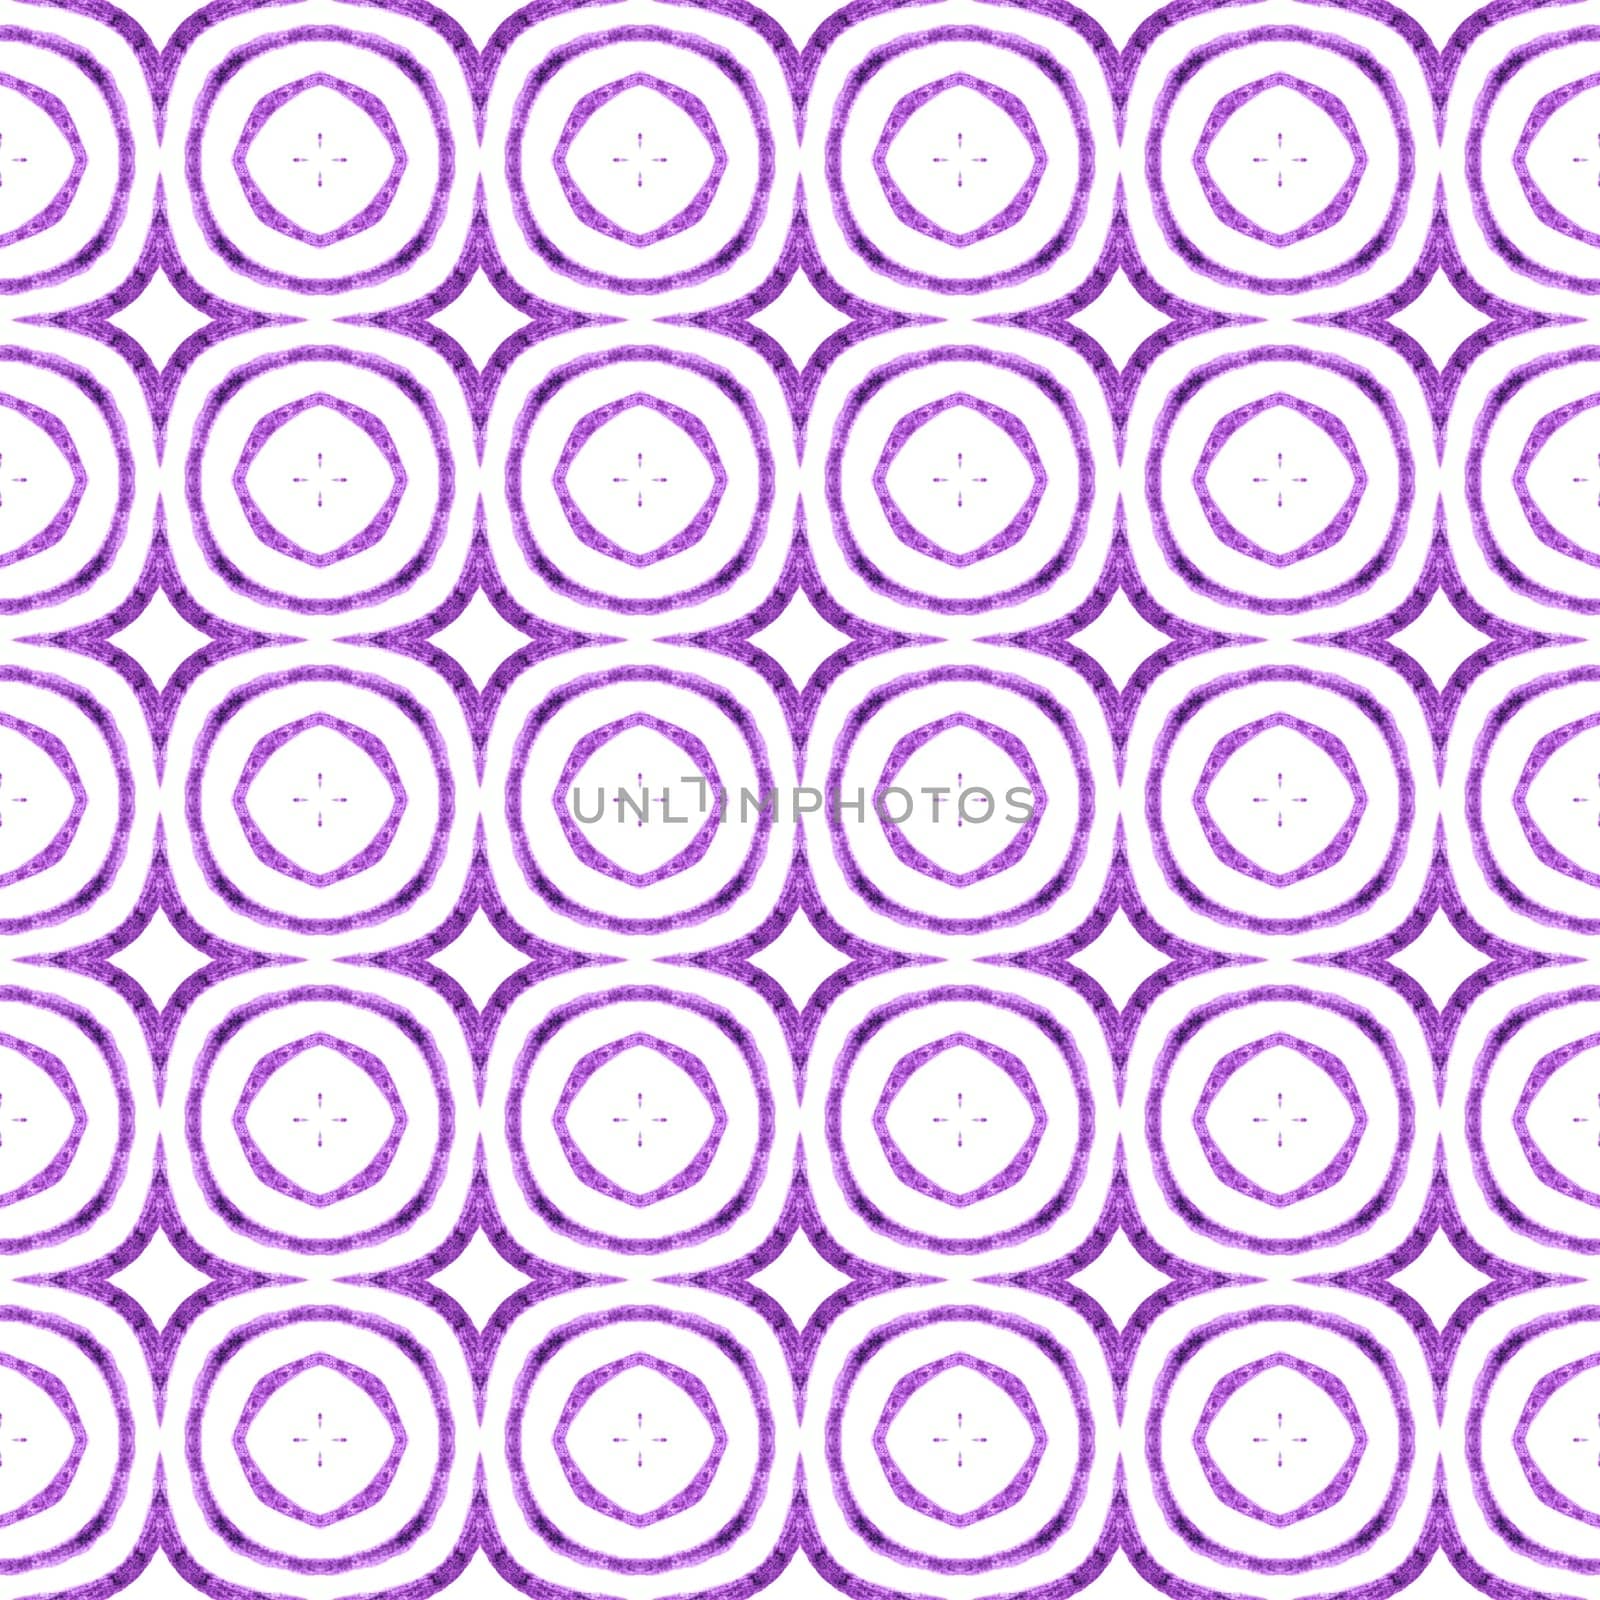 Chevron watercolor pattern. Purple fine boho chic summer design. Green geometric chevron watercolor border. Textile ready grand print, swimwear fabric, wallpaper, wrapping.